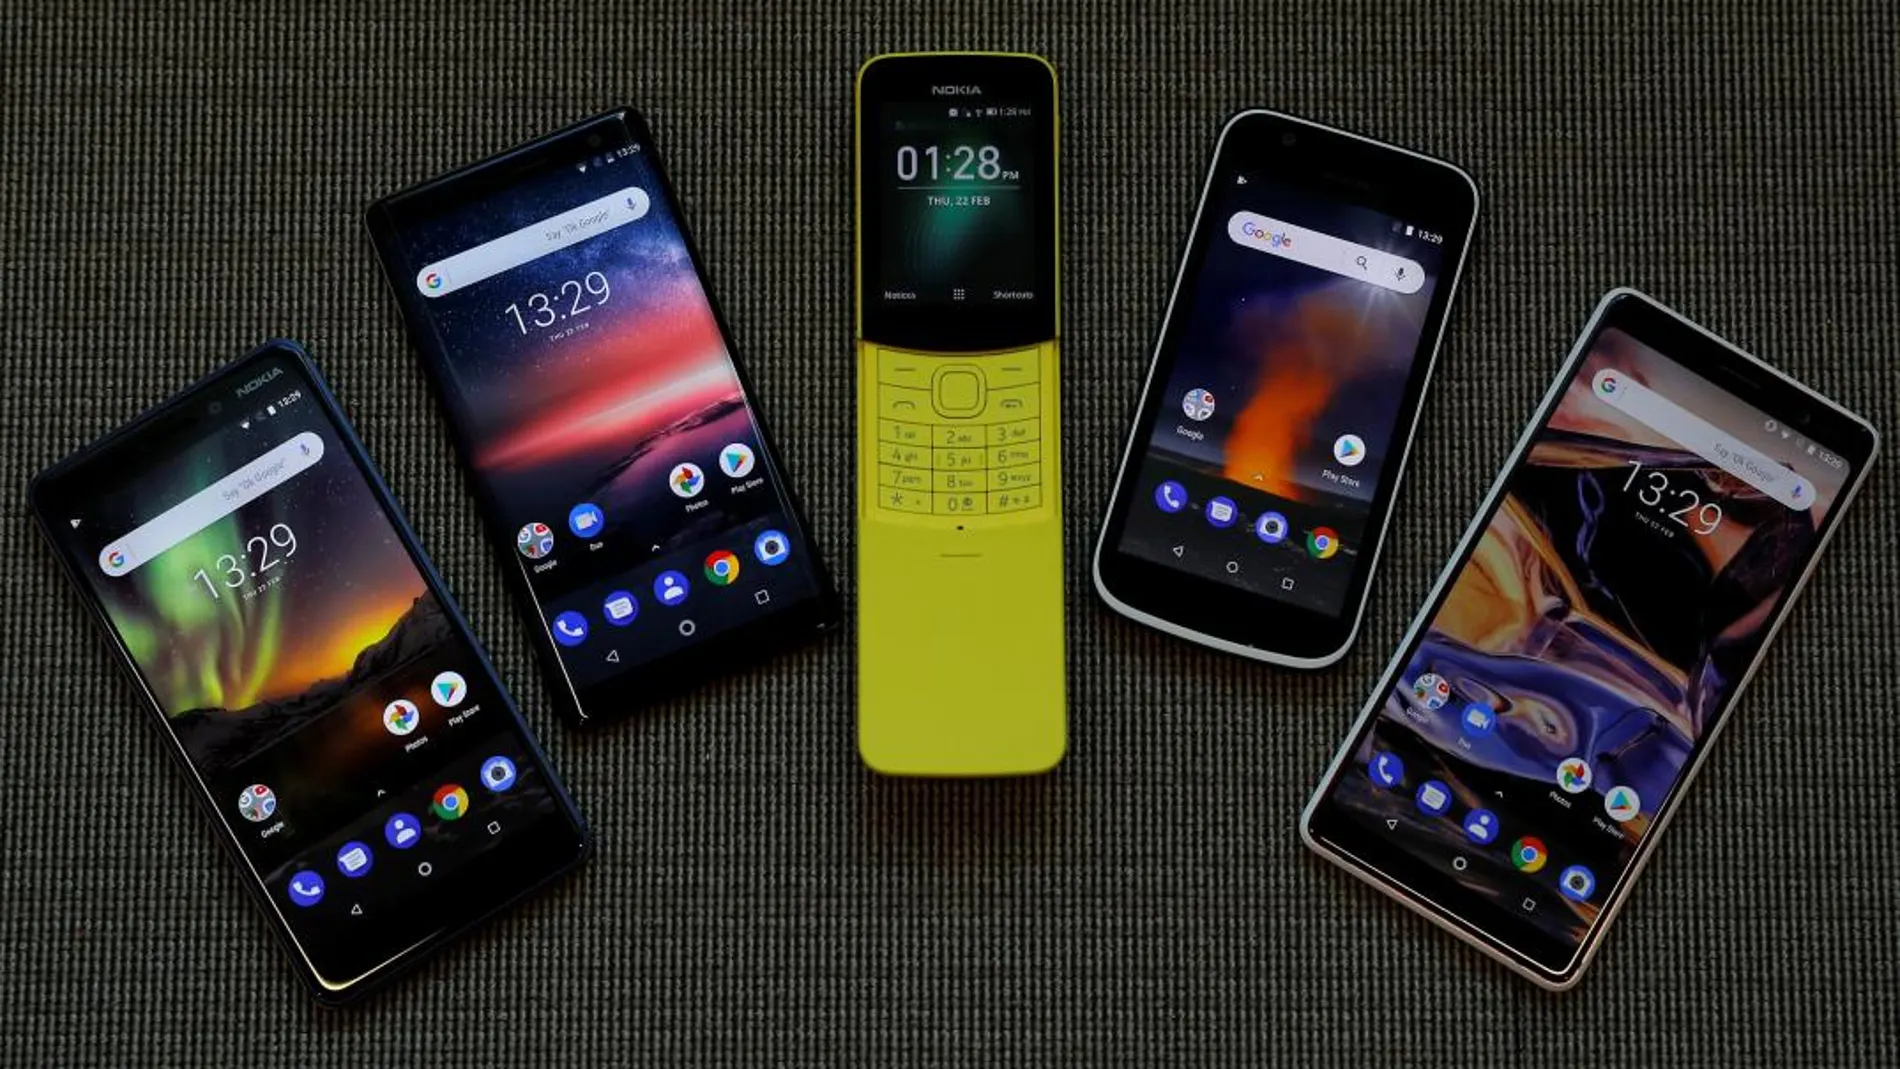 Los cinco nuevos modelos de Nokia, con el 8110 en el centro, expuestos en el MWC